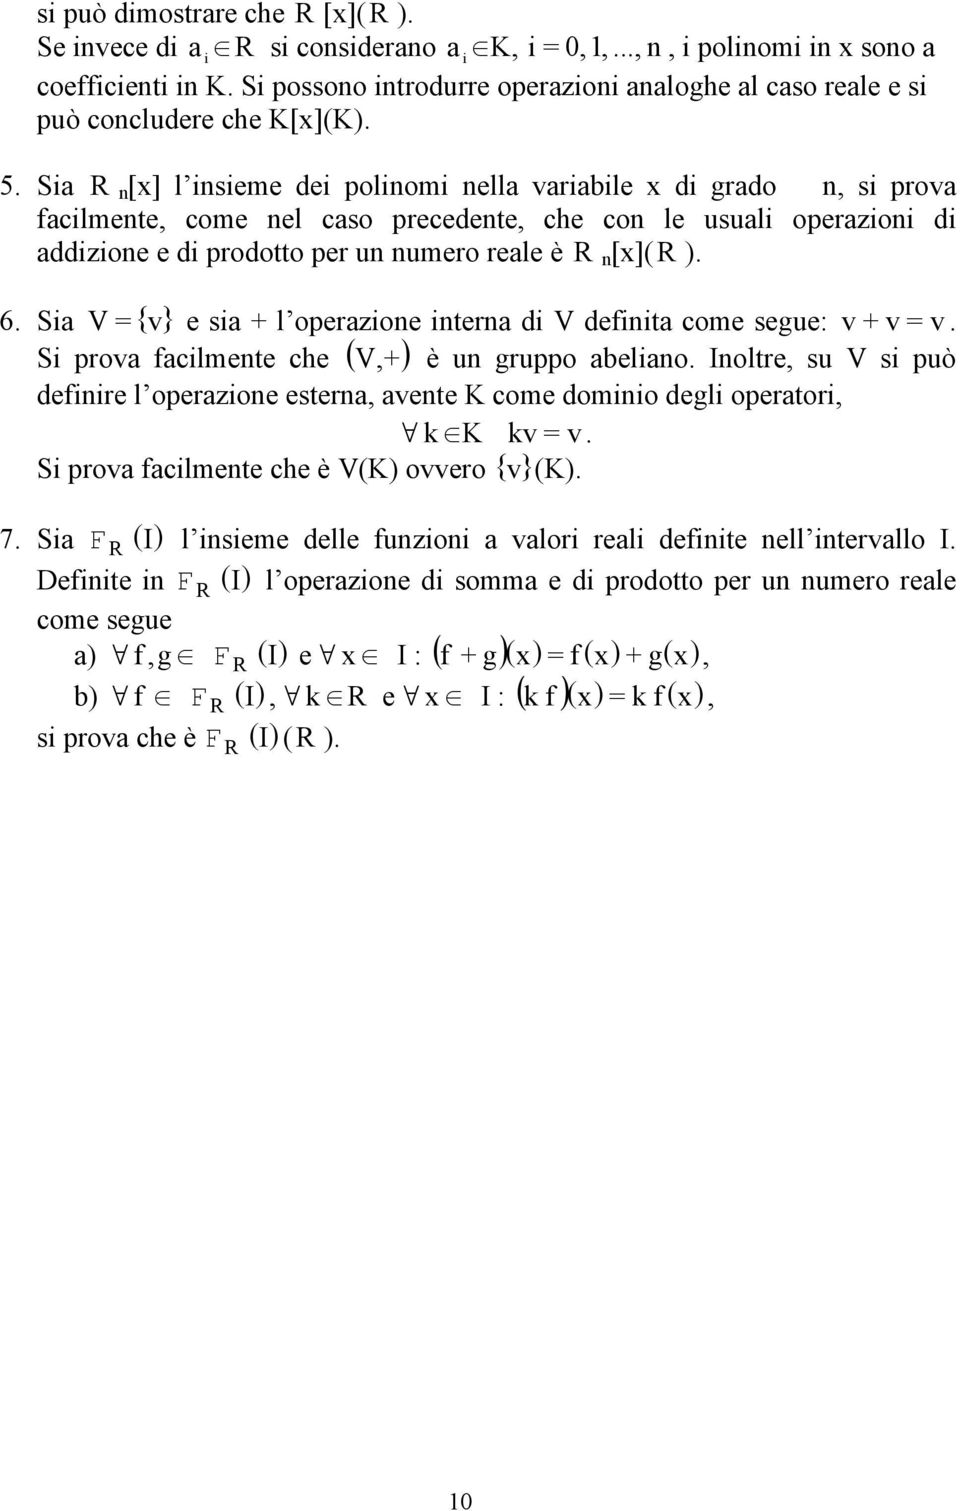 sia + l operazioe itera di V defiita come segue: v + v = v Si prova facilmete che ( V + ) è u gruppo abeliao Ioltre su V si può defiire l operazioe estera avete K come domiio degli operatori k K kv =